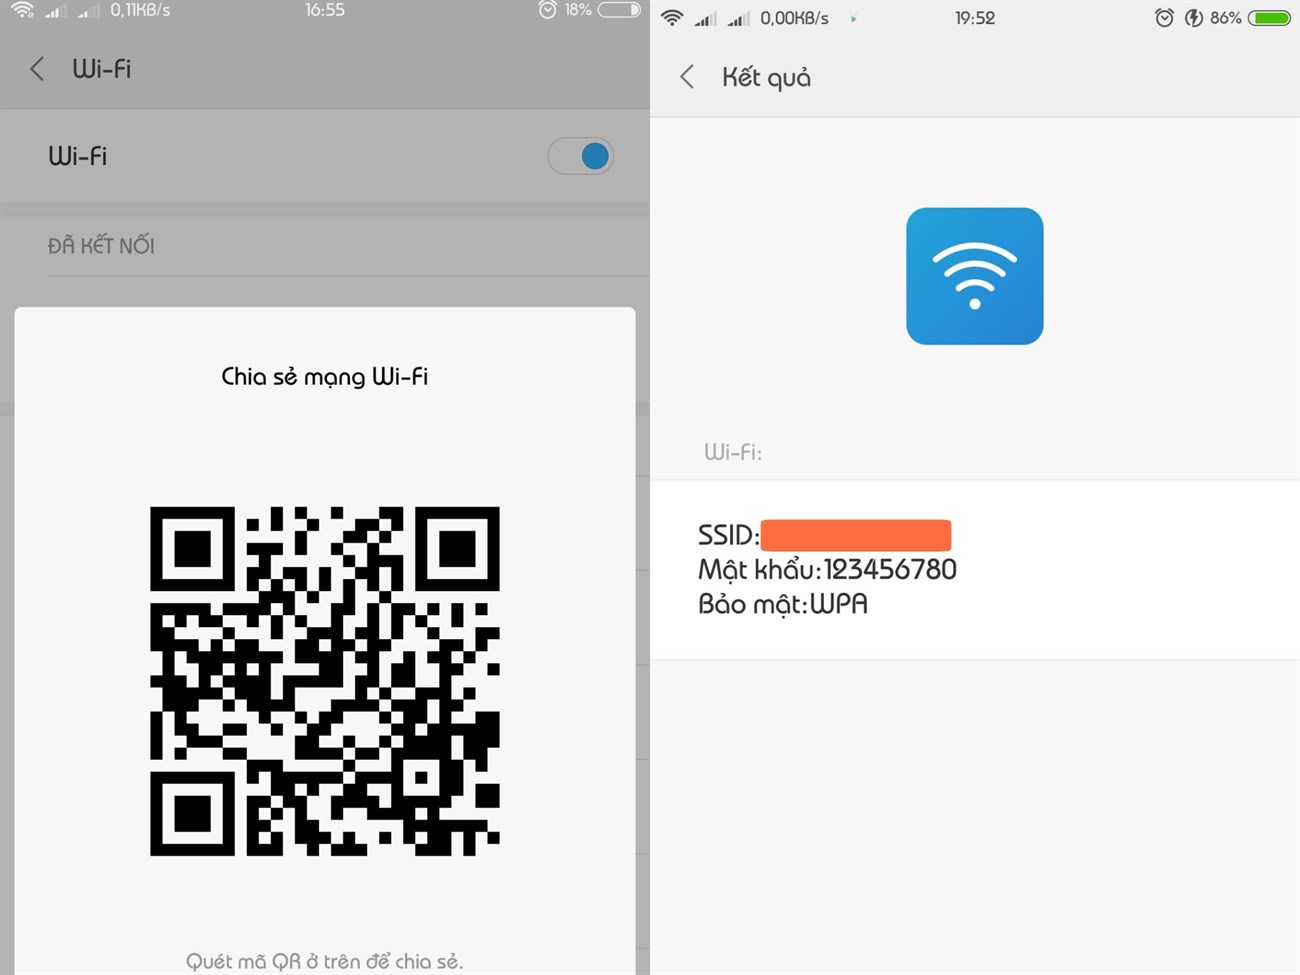 Thủ thuật kết nối và chia sẻ Wifi bằng mã QR trên Smartphone